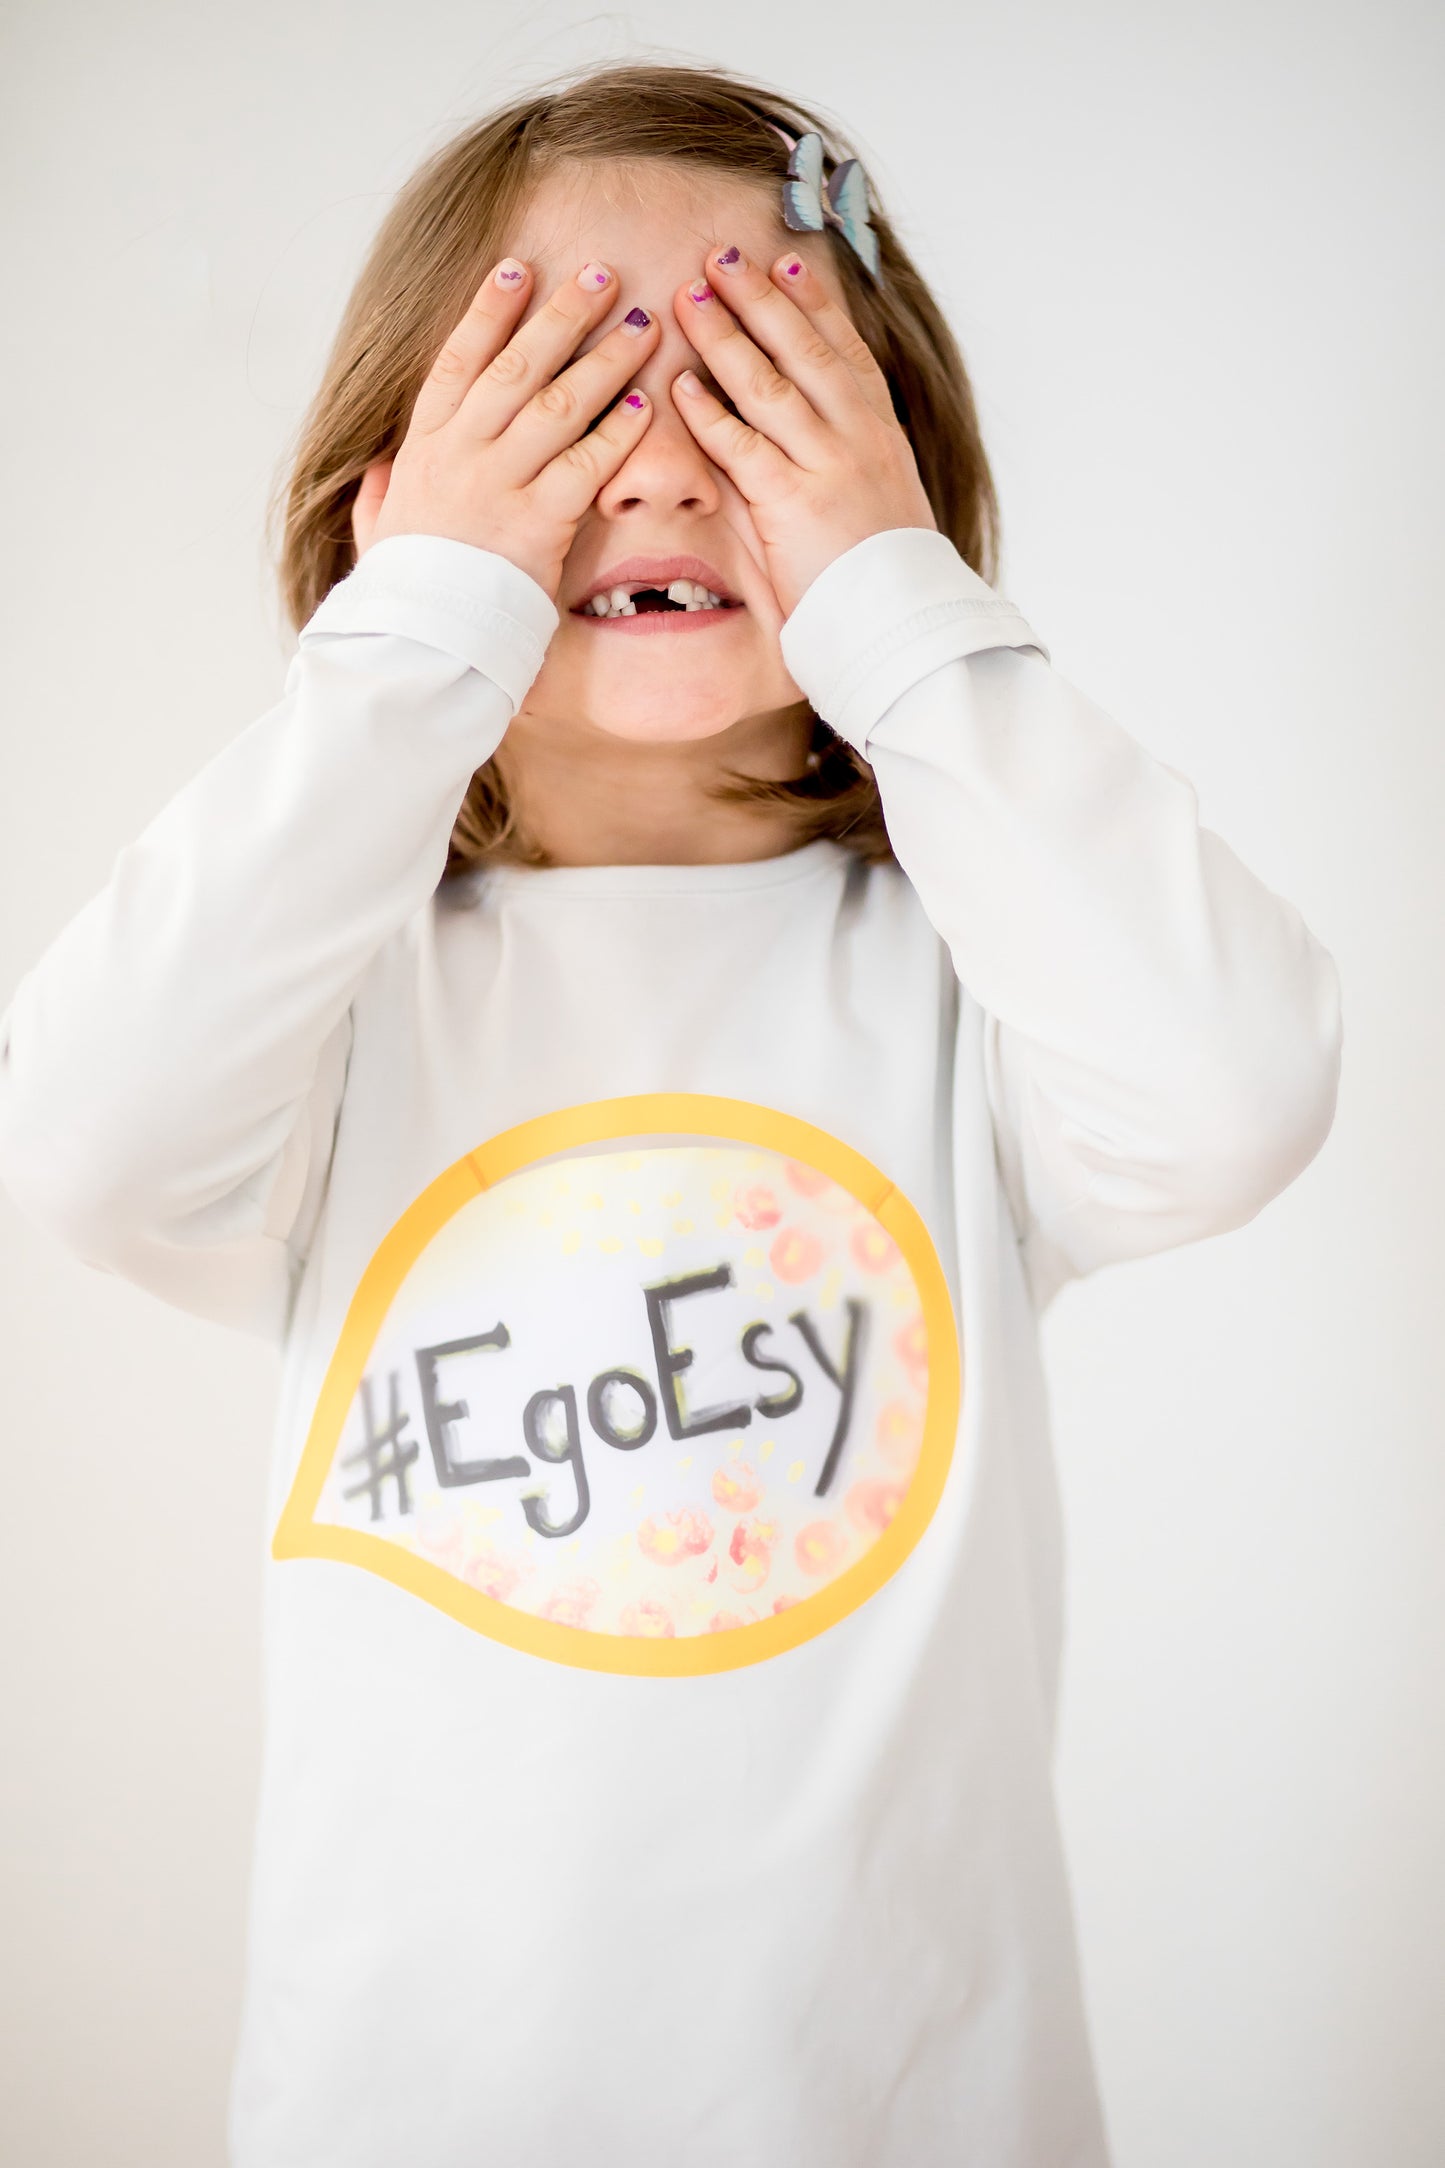 EgoEsy Shirt für Kinder und Jugendliche. Eigene Kunstwerke und Botschaften individuell und nachhaltig im Shirt tragen! #egoesy